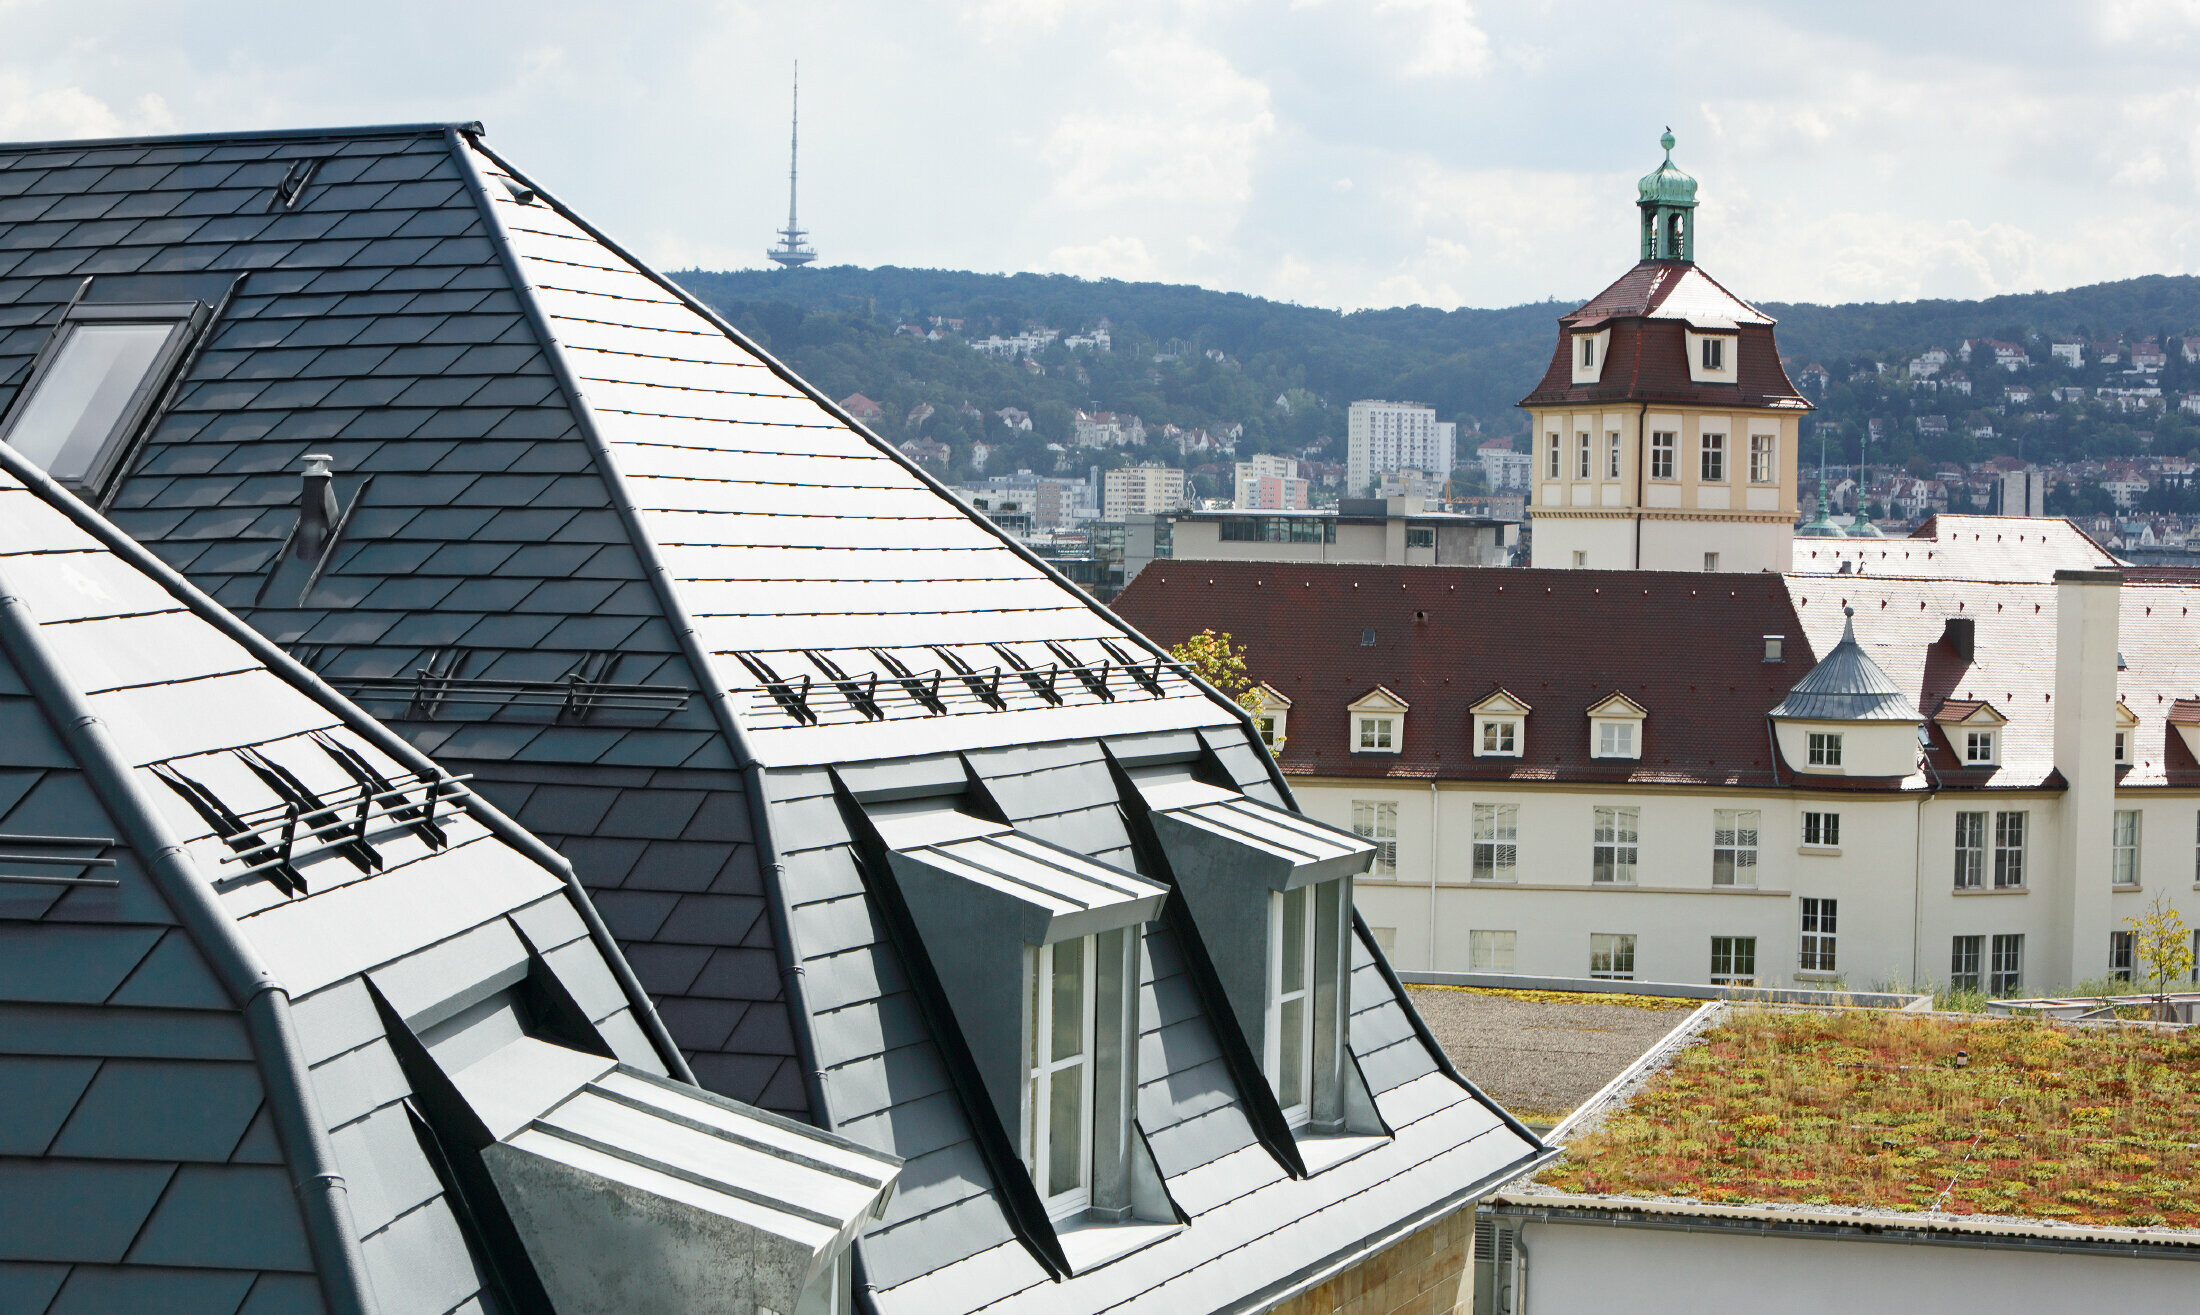 Stara gradska kuća u Stuttgartu s nakrivljenim krovom i brojnim krovnim kućicama s prozorima, pokrivena aluminijskom šindrom tvrtke PREFA u P.10 antracit boji